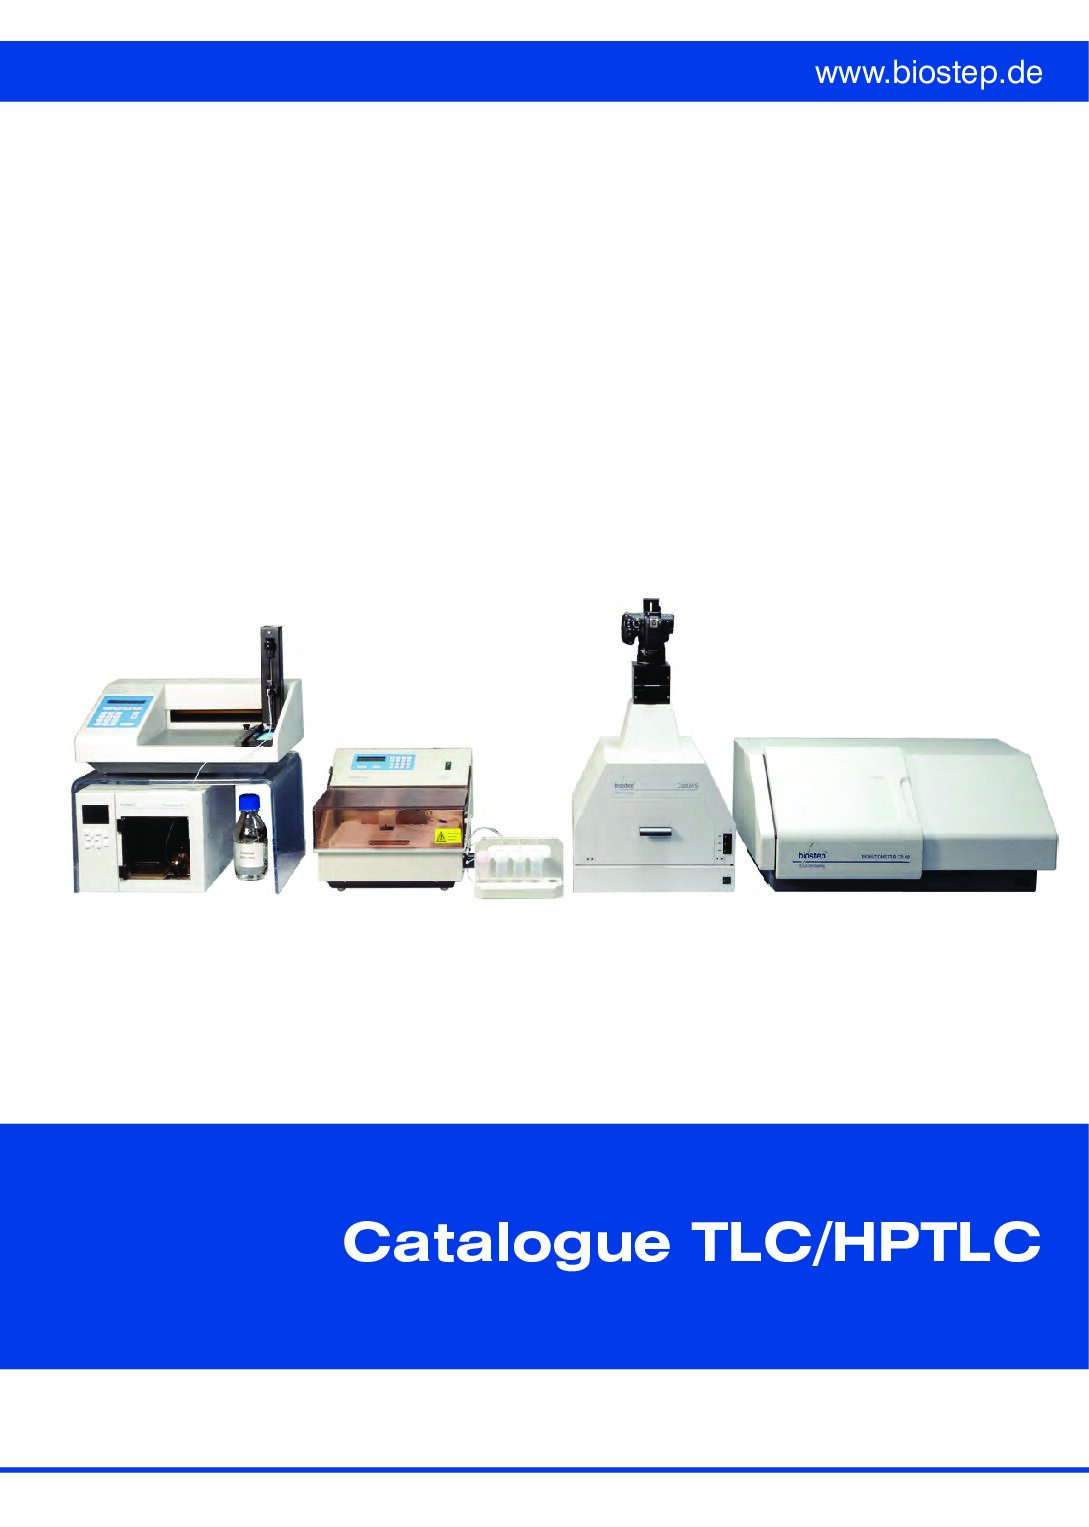 Biostep TLC_HPTLC Catalogue 2020-21